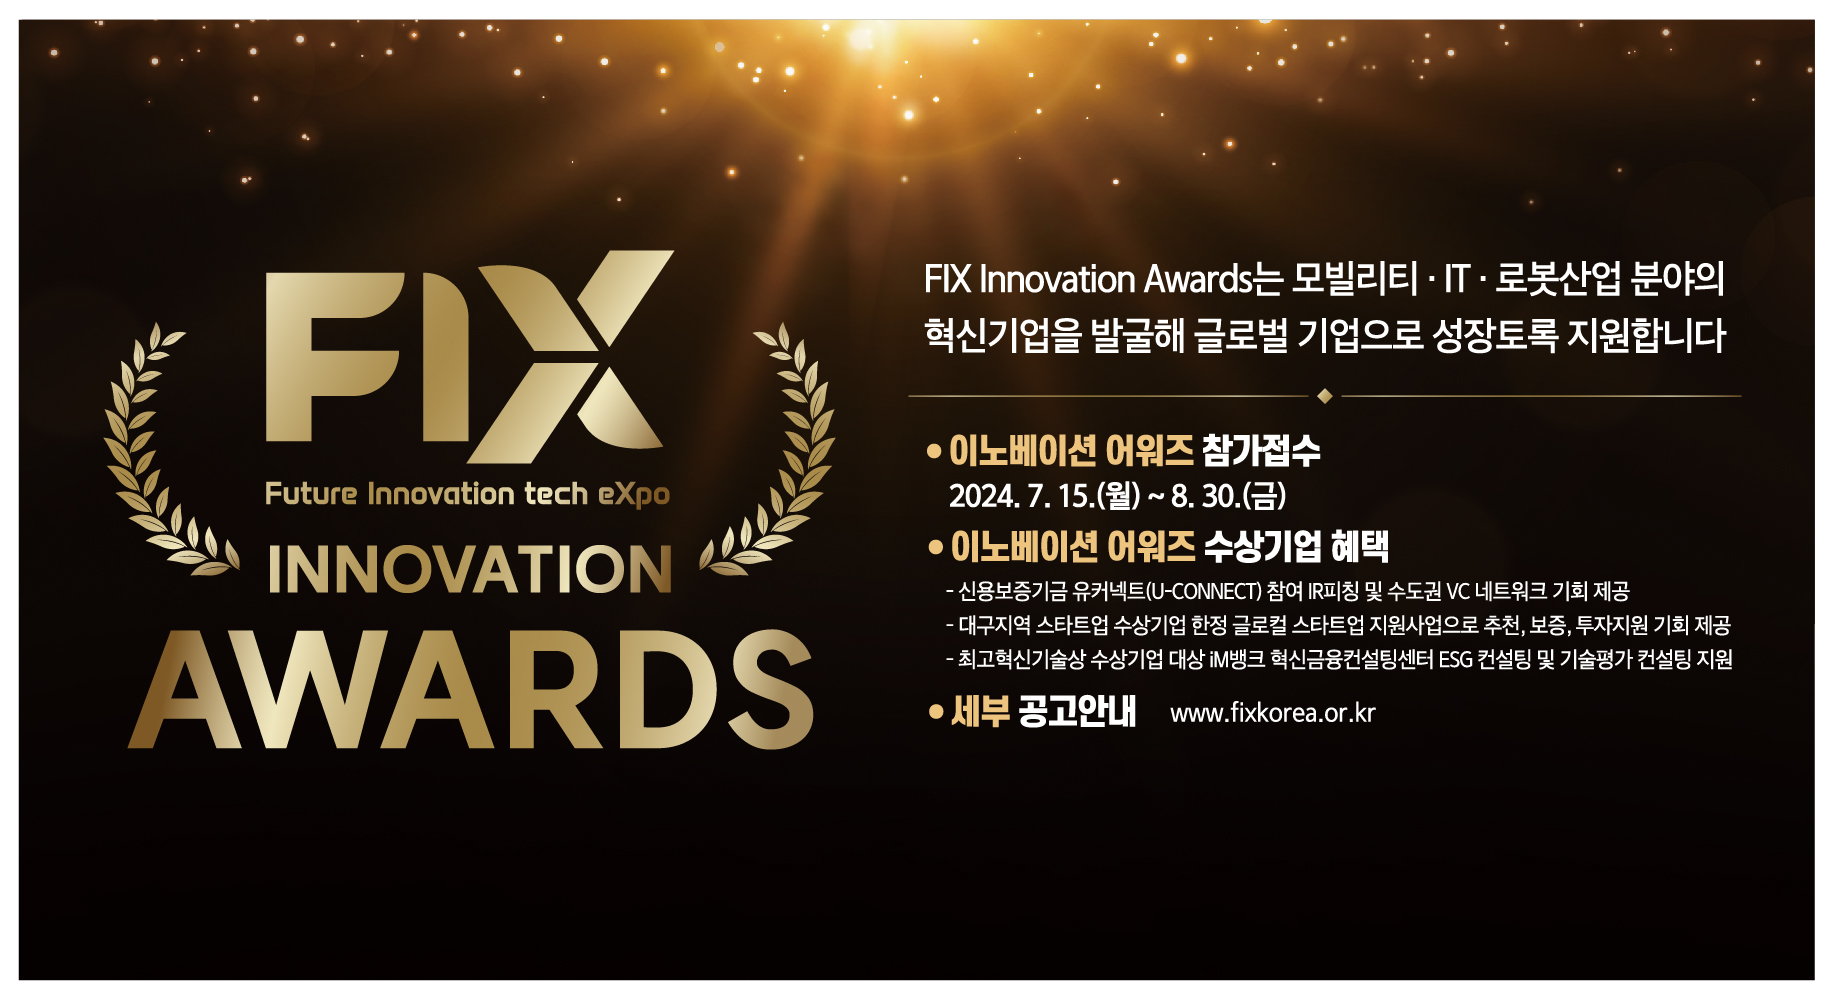 세상을 바꿀 혁신기술 보유 기업 모집, ‘FIX 이노베이션 어워즈(Innovation Awards)’에 도전하세요!